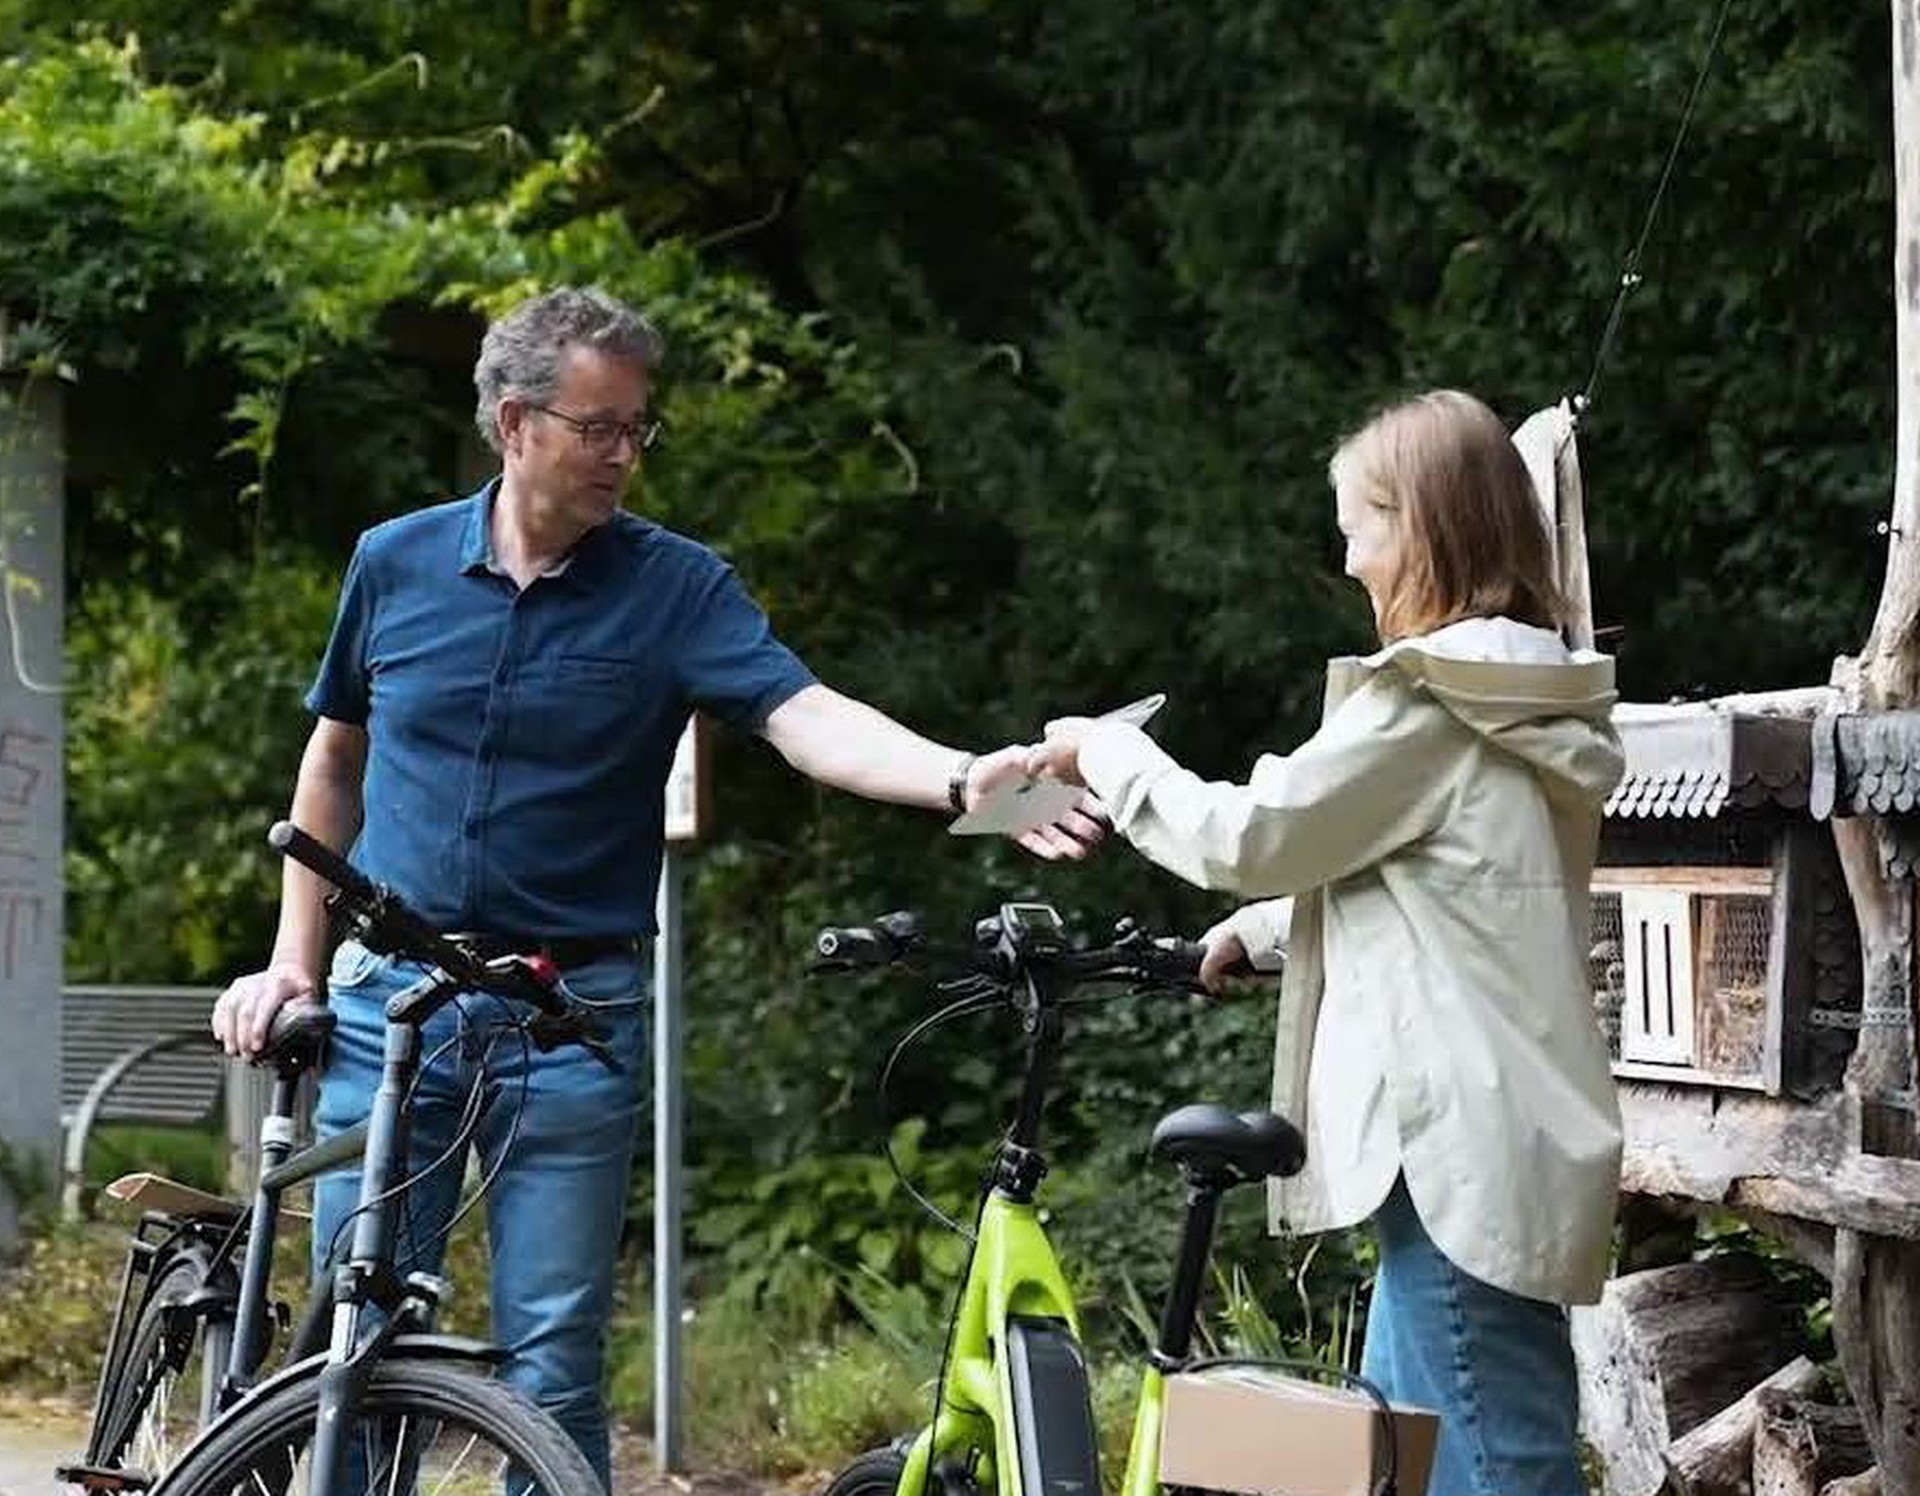 Ein Mann und eine Frau stehen sich mit einem Fahrrad in einem grünen Park gegenüber, die Frau gibt dem Mann eine Broschüre.